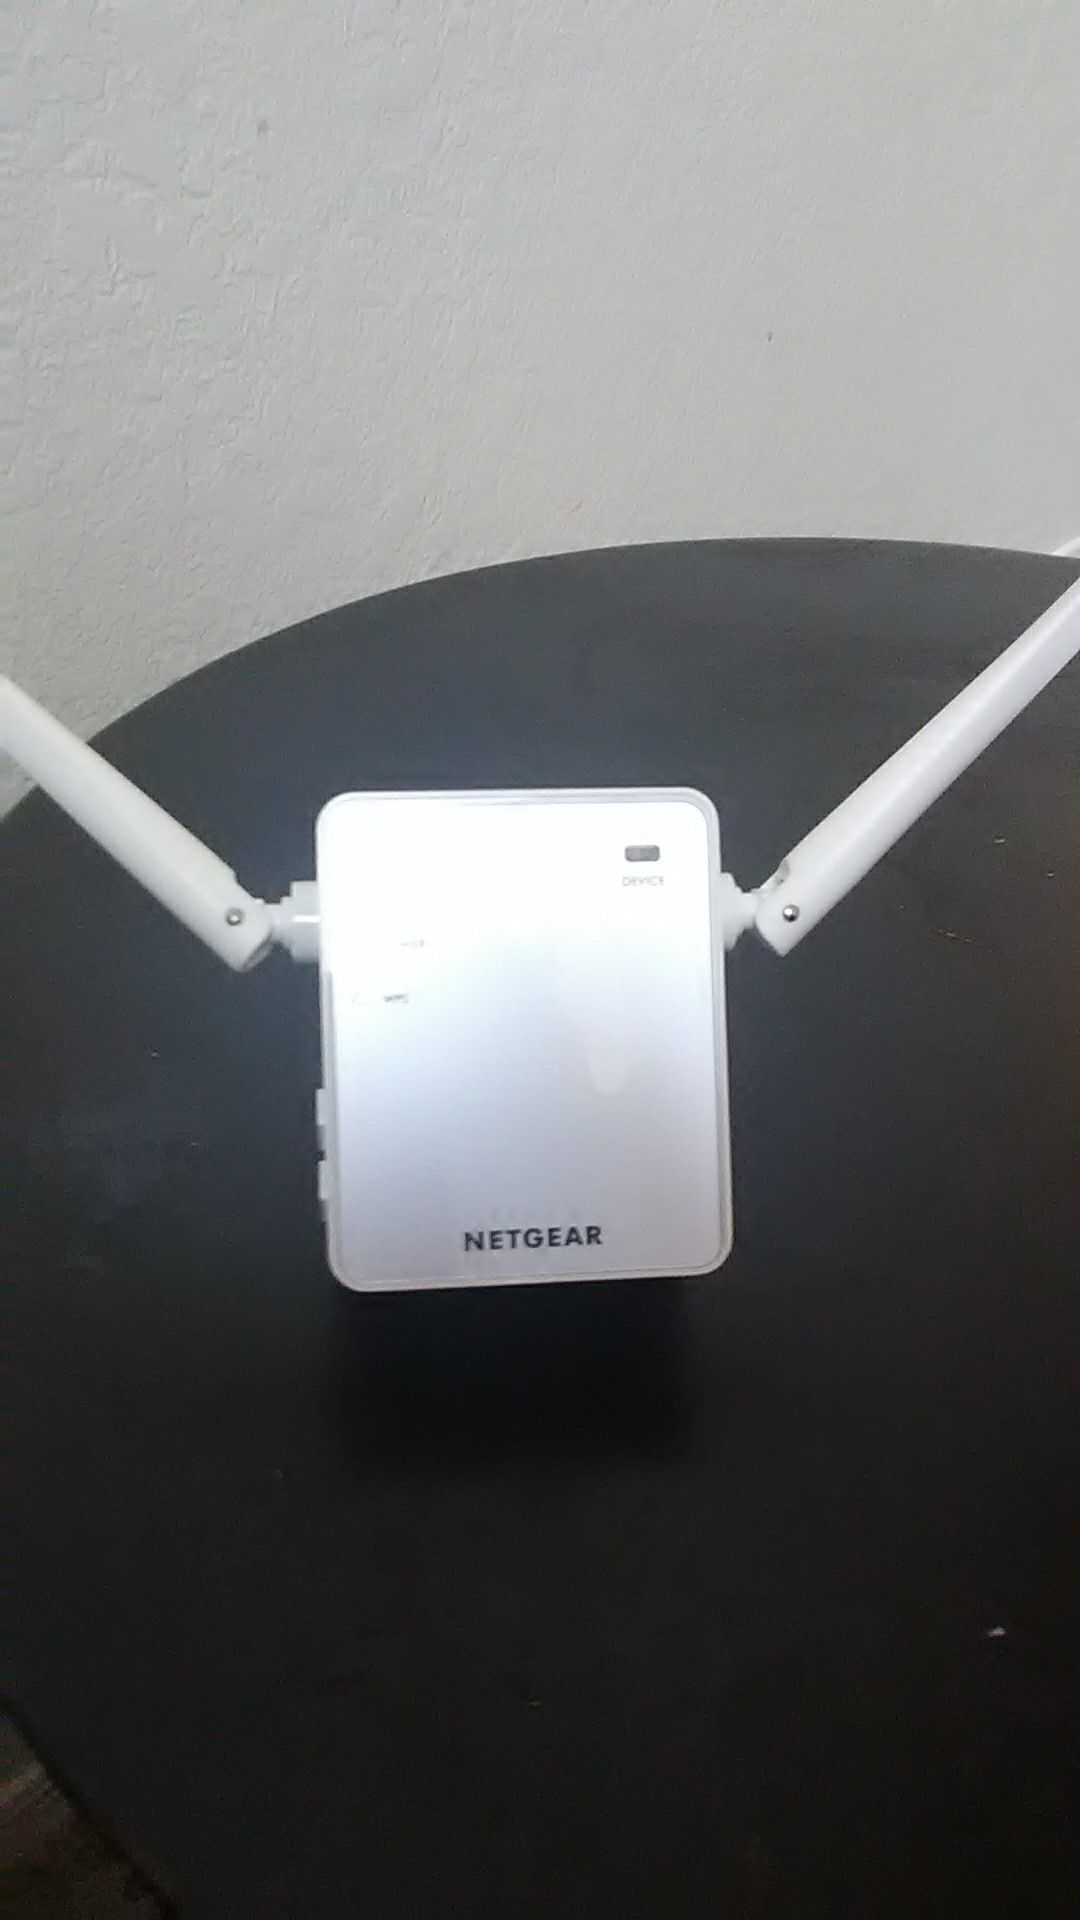 Netgear WiFi Router & Extender